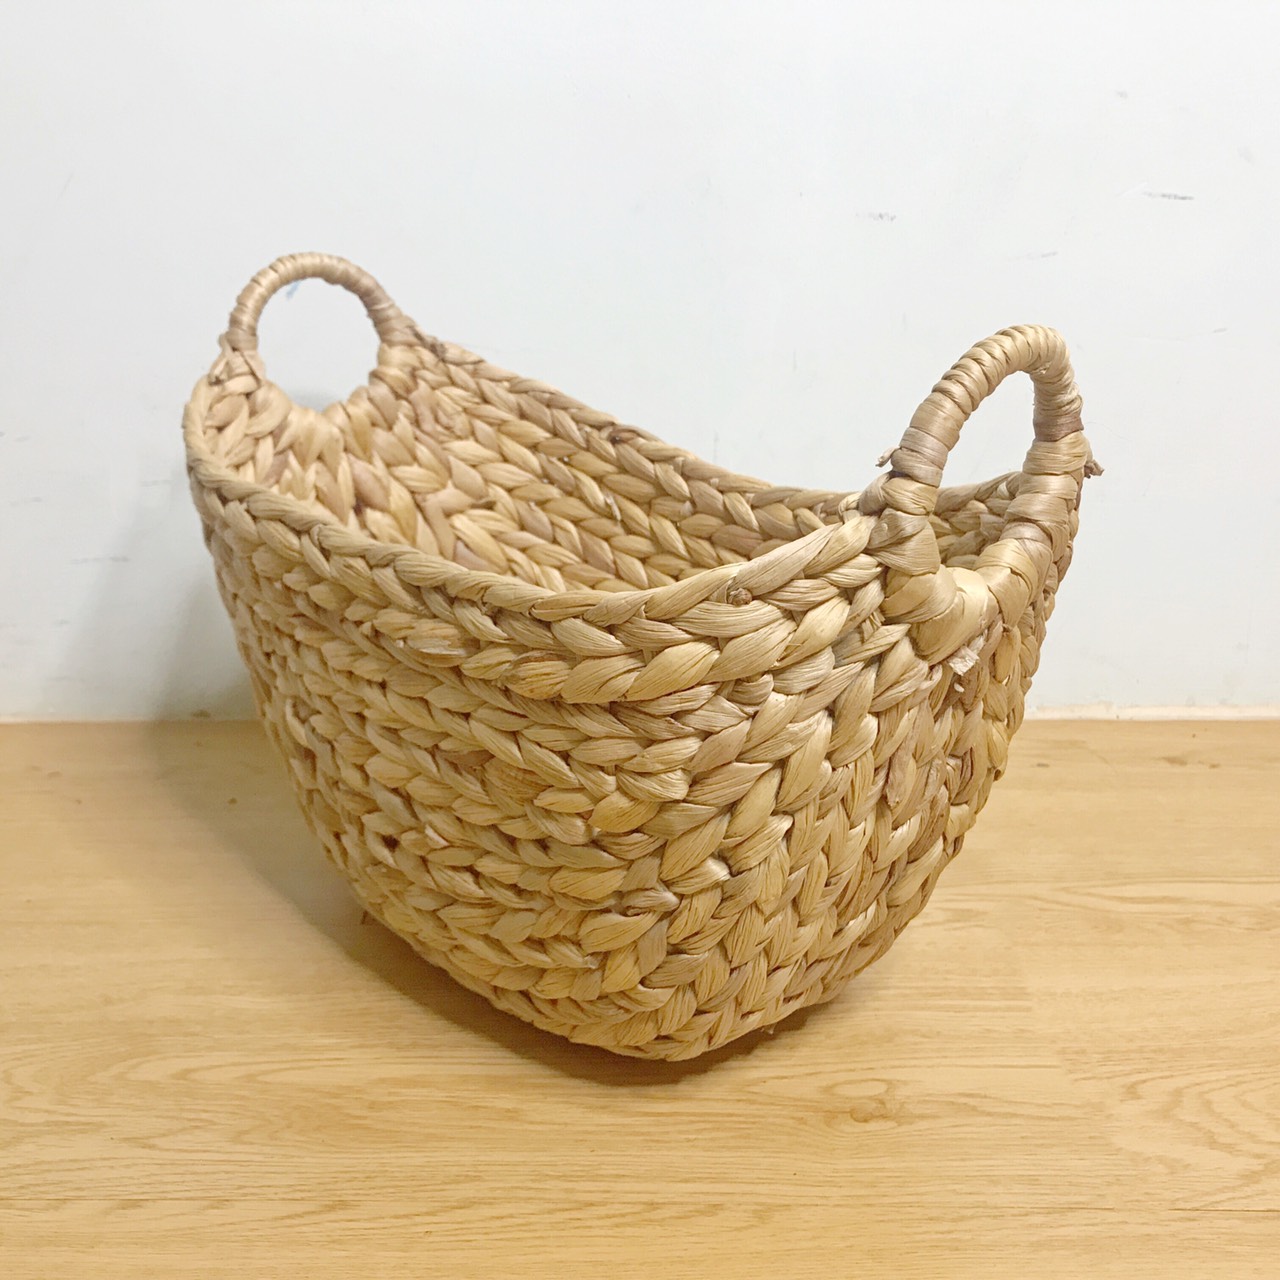 Sọt lục bình (sọt bèo tây) đa năng hình thuyền có quai cầm/ Water hyacinth storage basket with handles